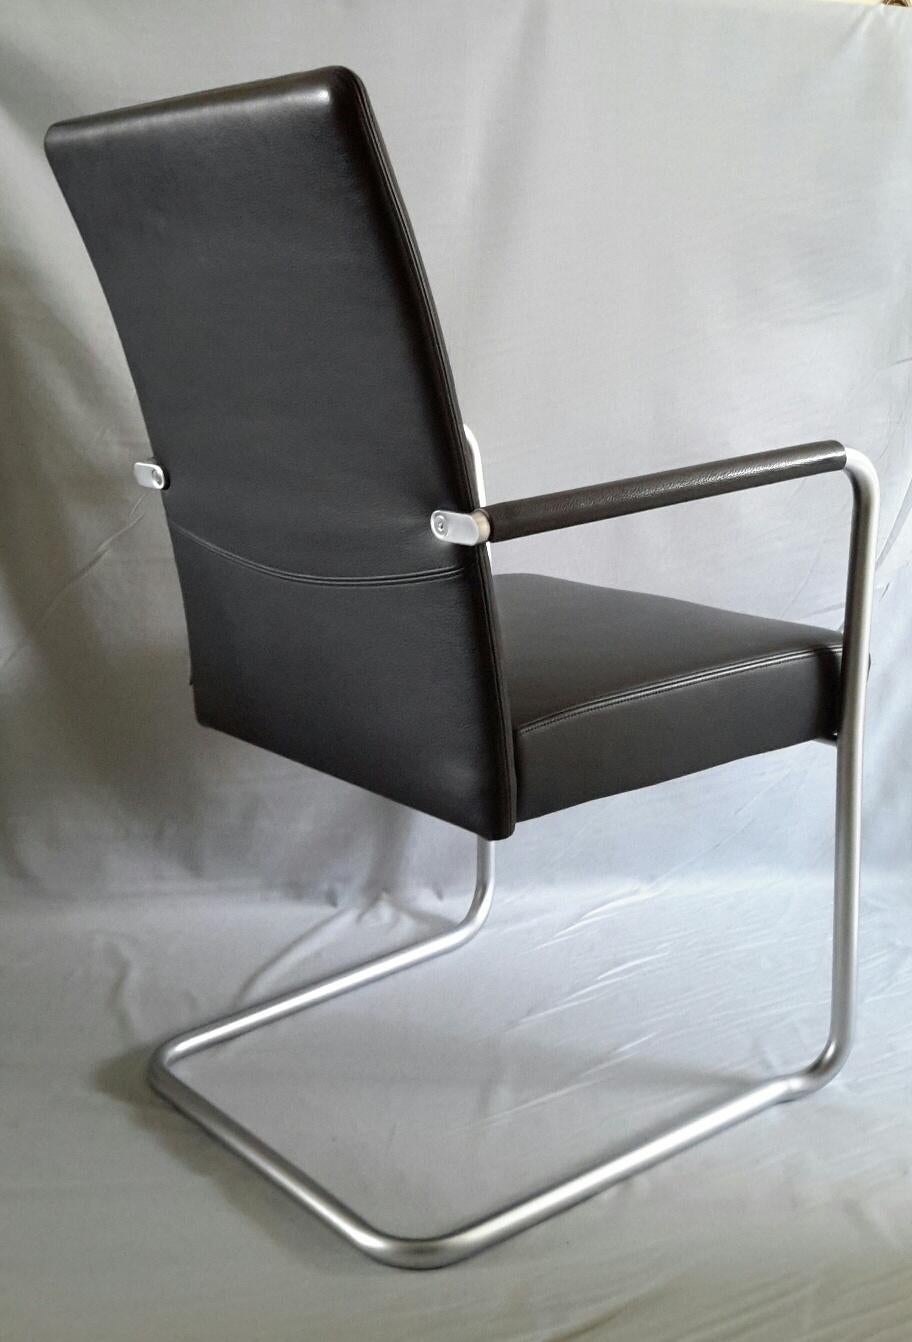 Quatre fauteuils Walter Knoll ligne Jason (1997) design du studio autrichien EOOS, en cuir grainé noir avec structure en aluminium anodisé.
Les fauteuils sont dans un état comme neuf.
Attention prix par 1. Total 4 fauteuils disponibles. Vendu par